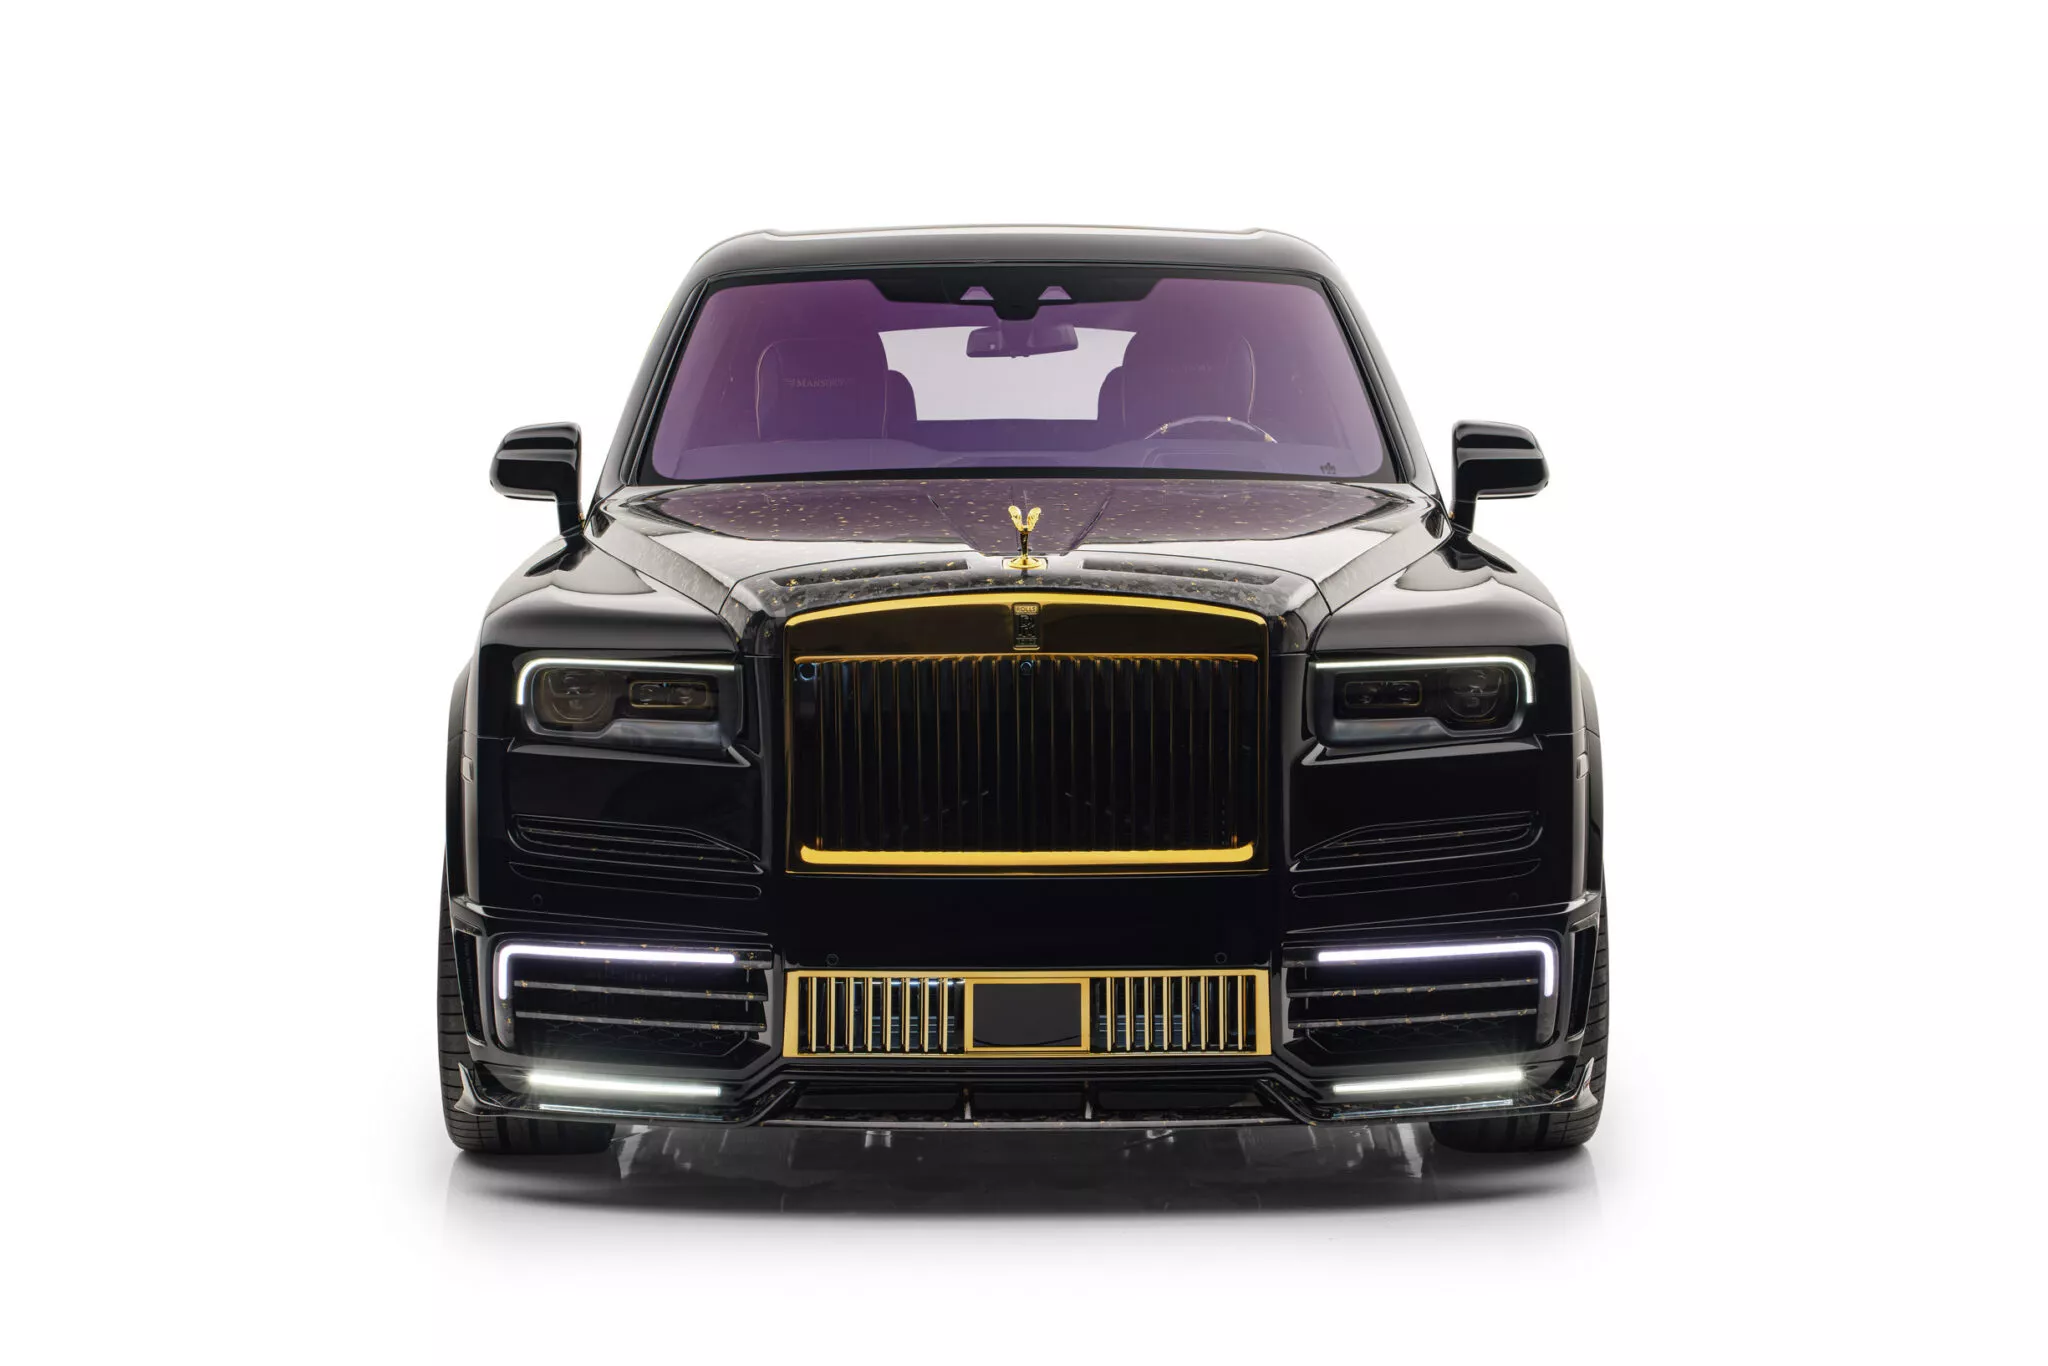 Rolls Royce Cullinan bản độ Mansory dát vàng cực chất mansory-linea-doro-1-2048x1366.webp